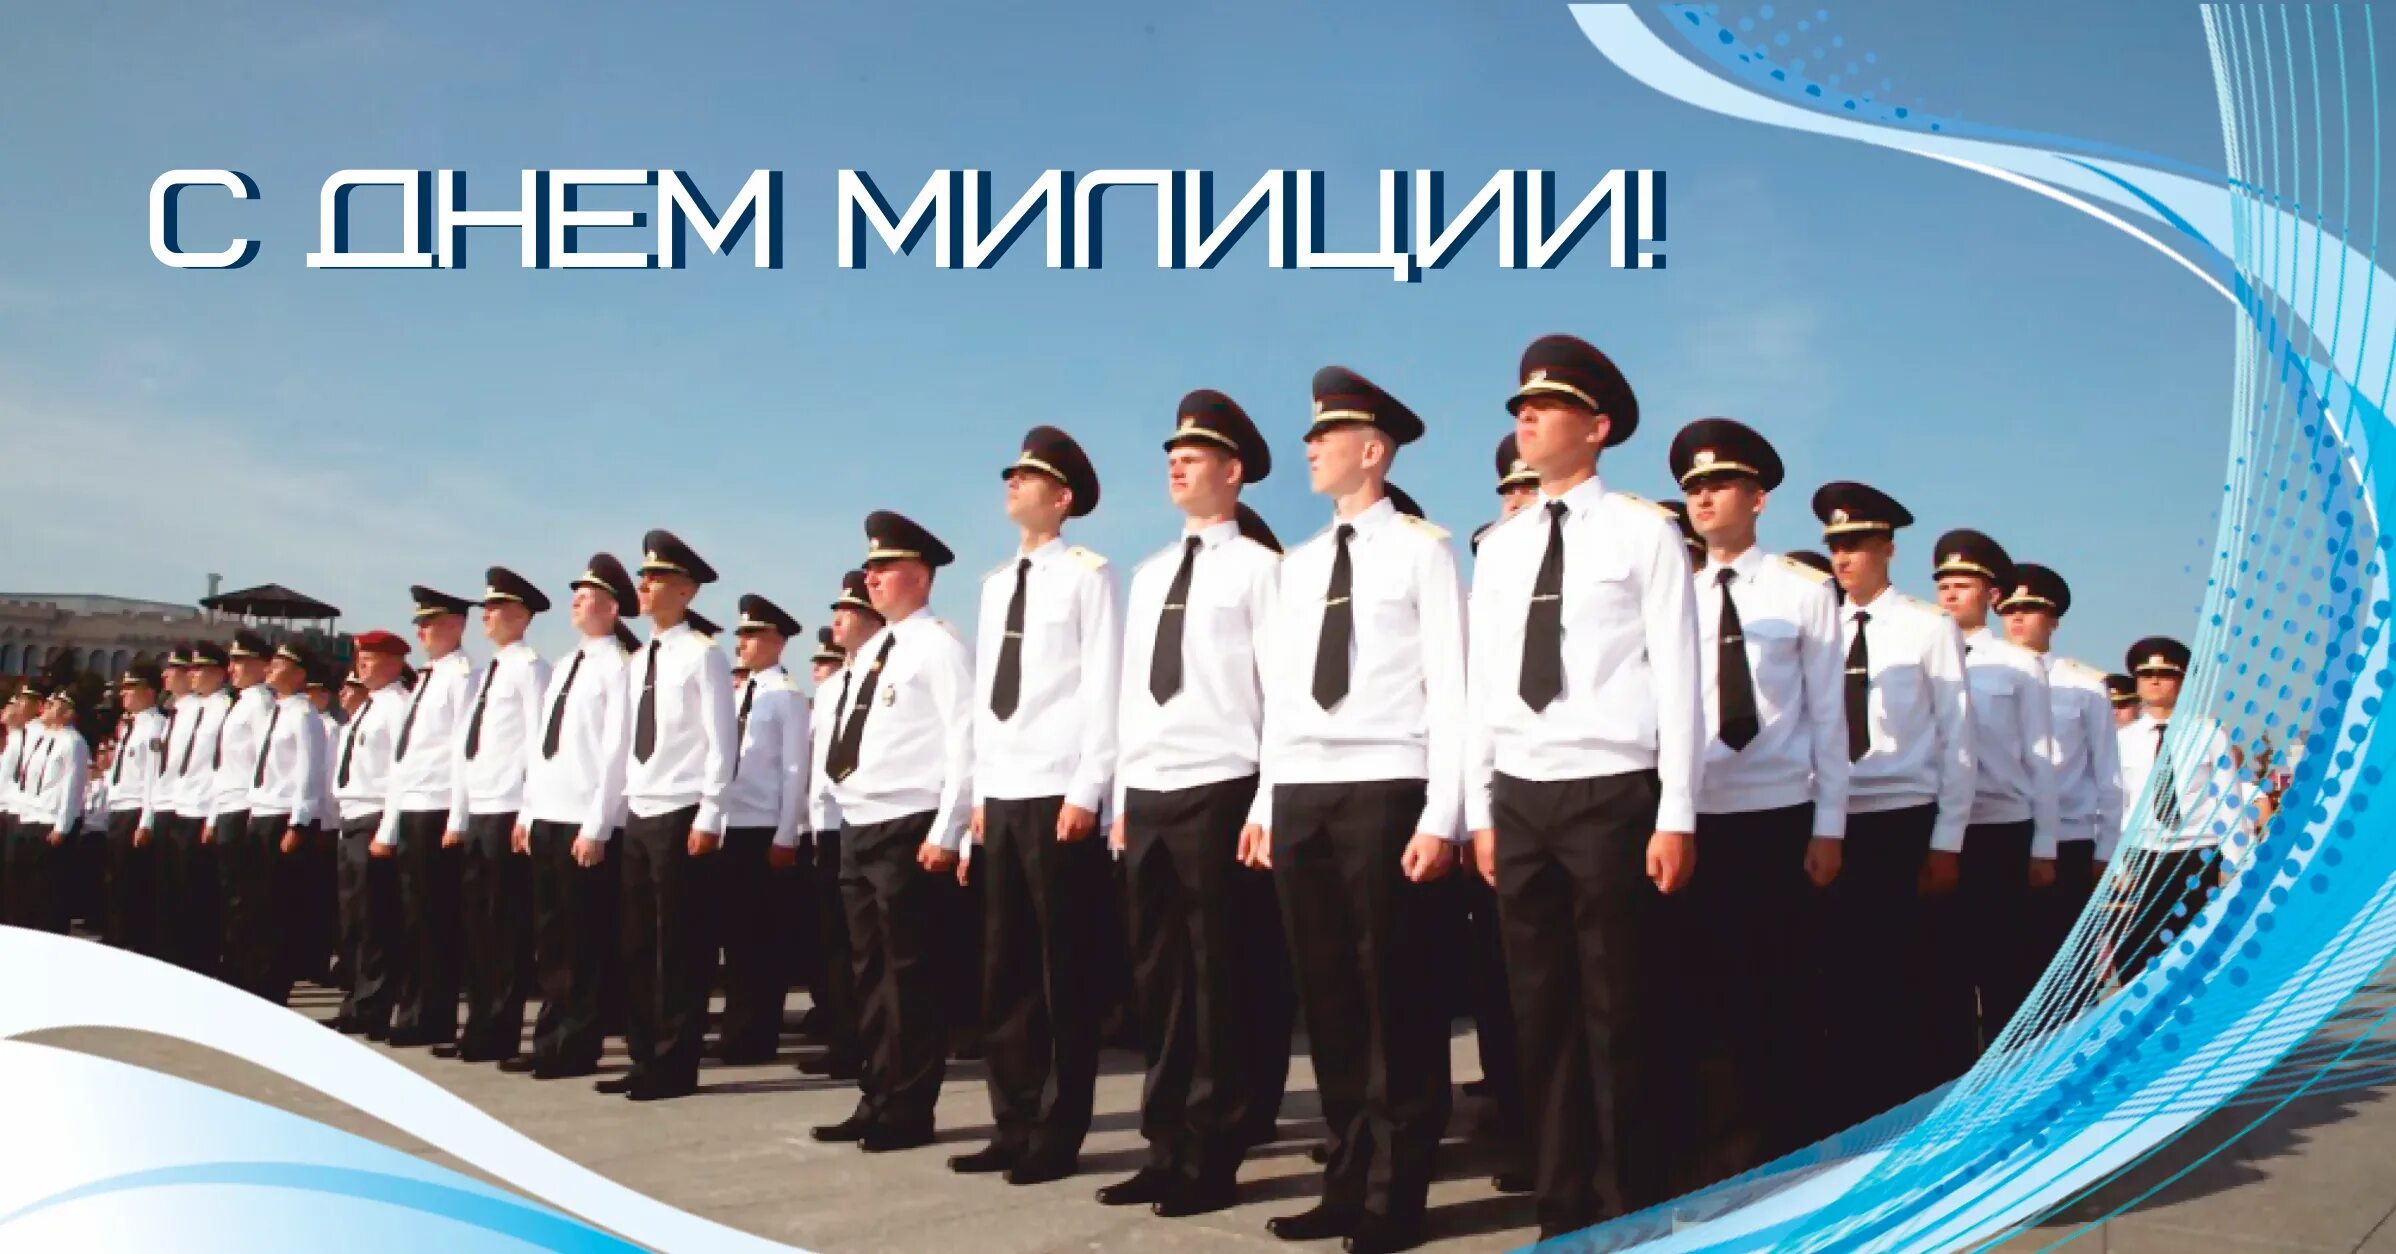 Открытка с днем милиции рб. День милиции в Беларуси. С днем милиции. День полиции 2020. Открытки с днем белорусской милиции.